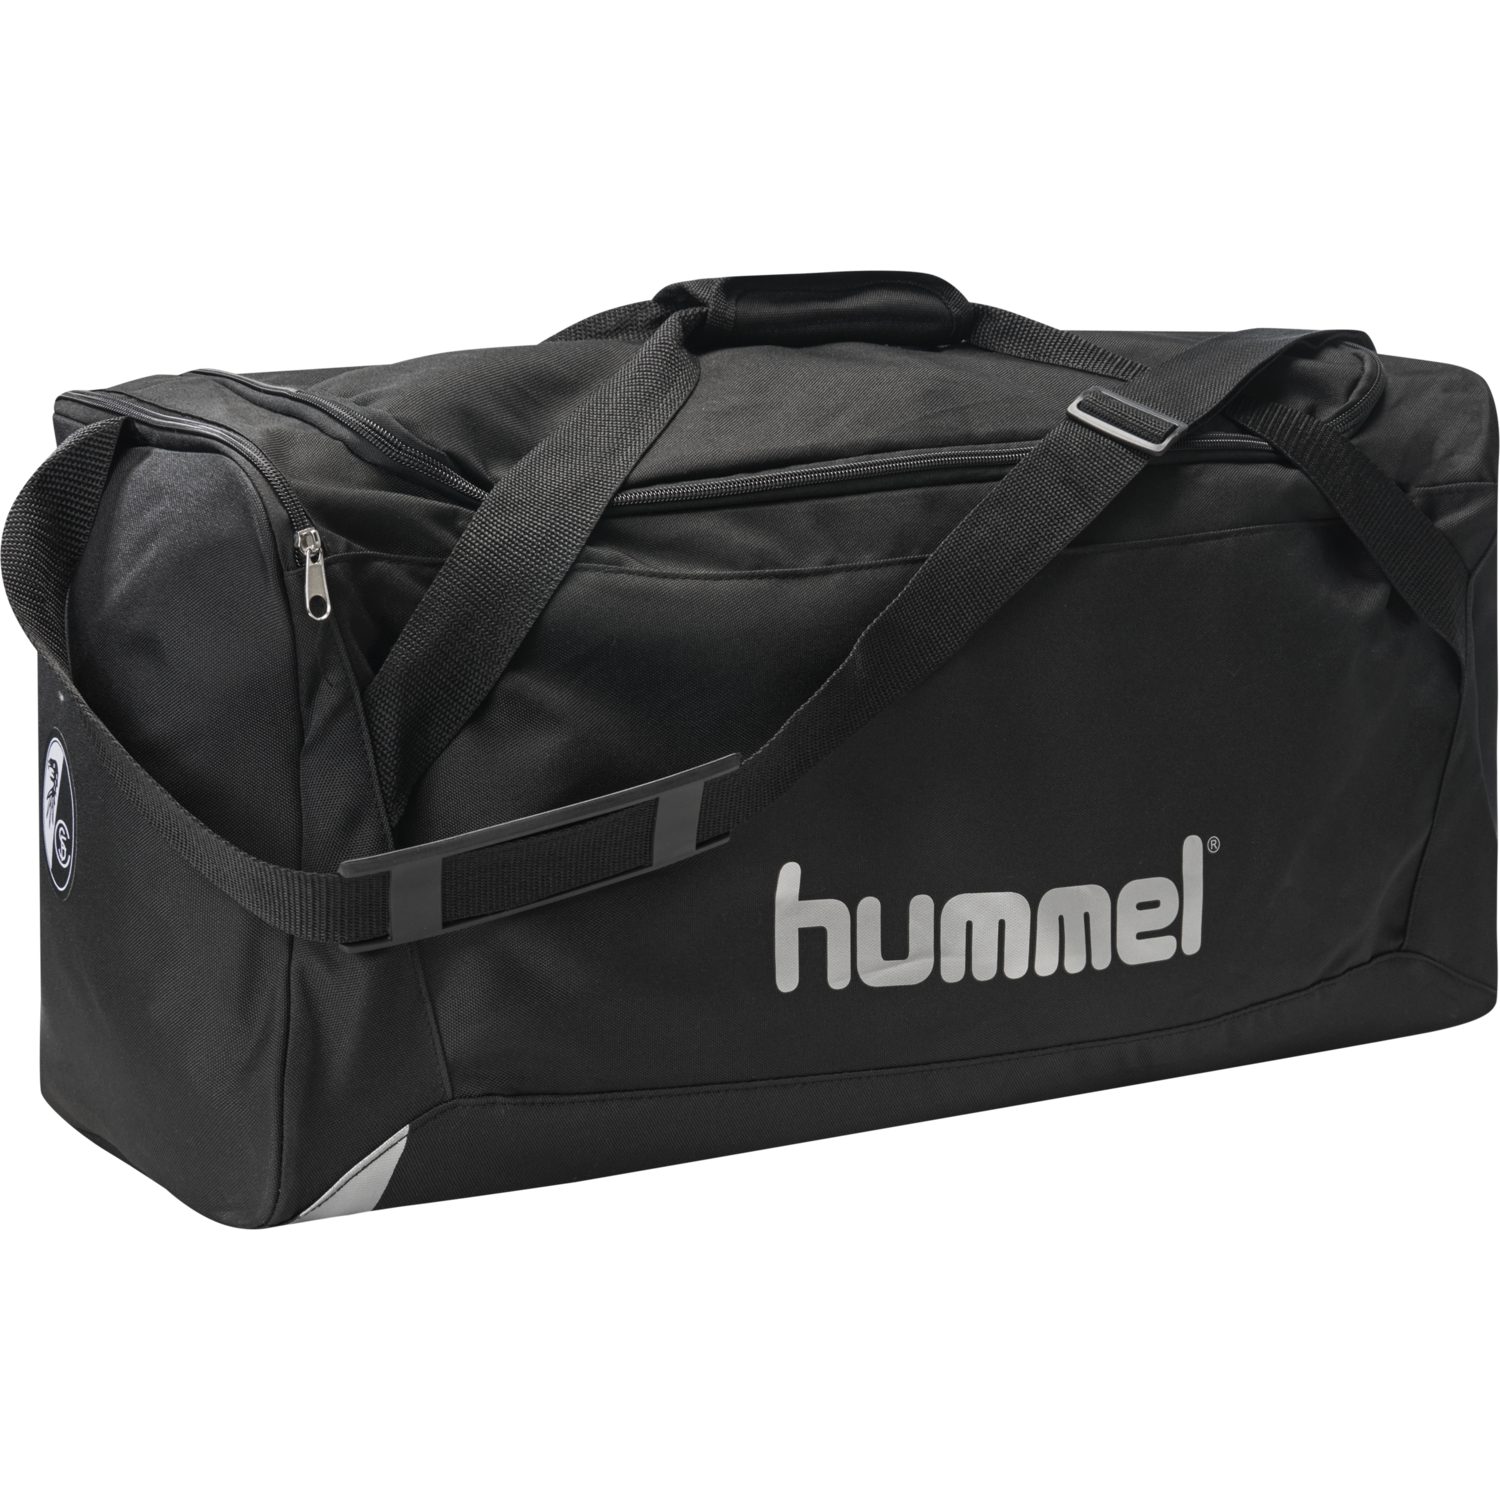 Hummel Core Sports Bag Sporttasche Fitnesstasche Reisetasche schwarz 204012 2001 